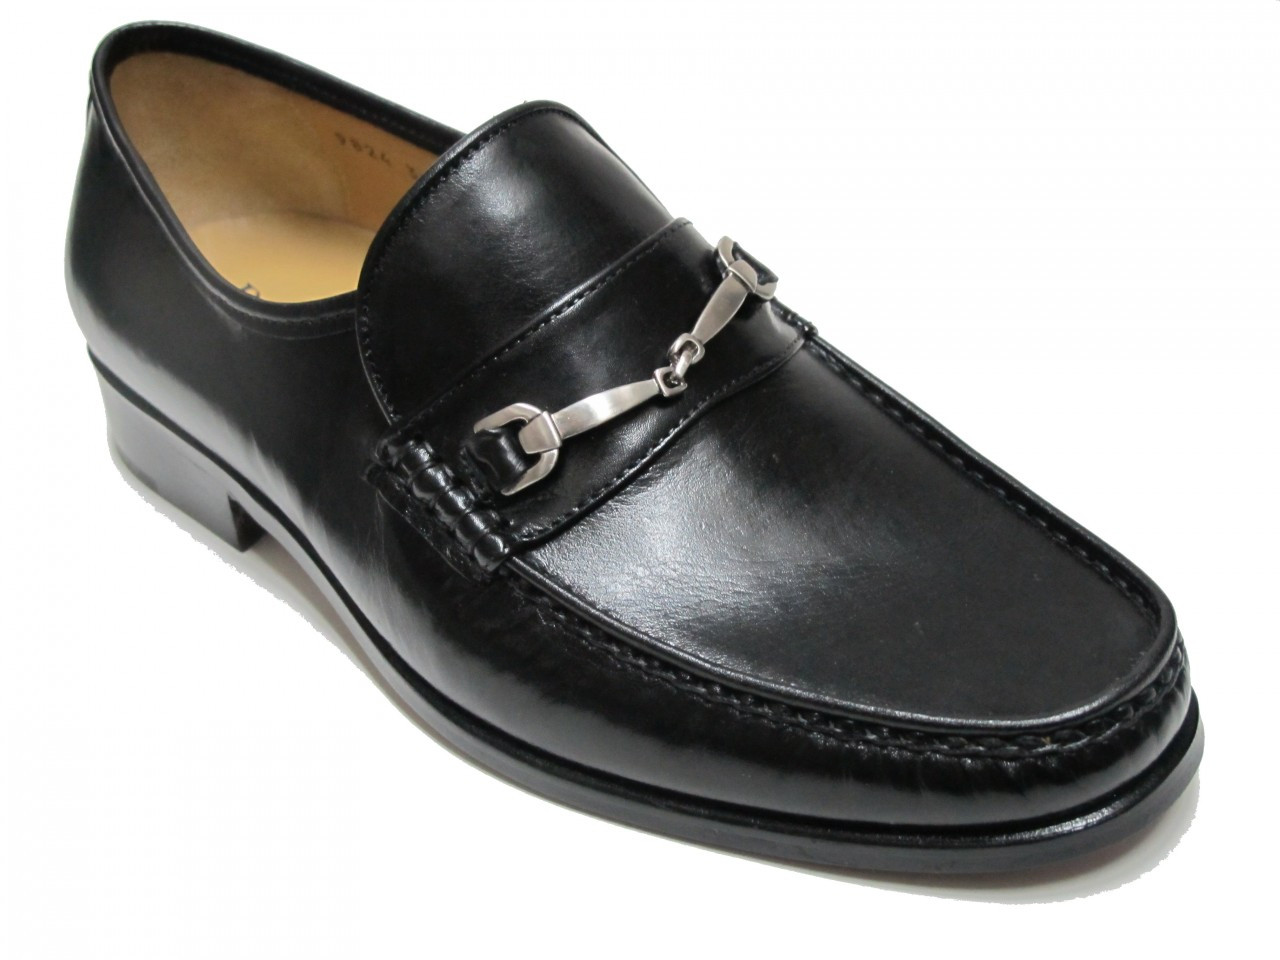 Davinci Men's Slip on Loafer Dressy Shoes 9824 Black and Brown